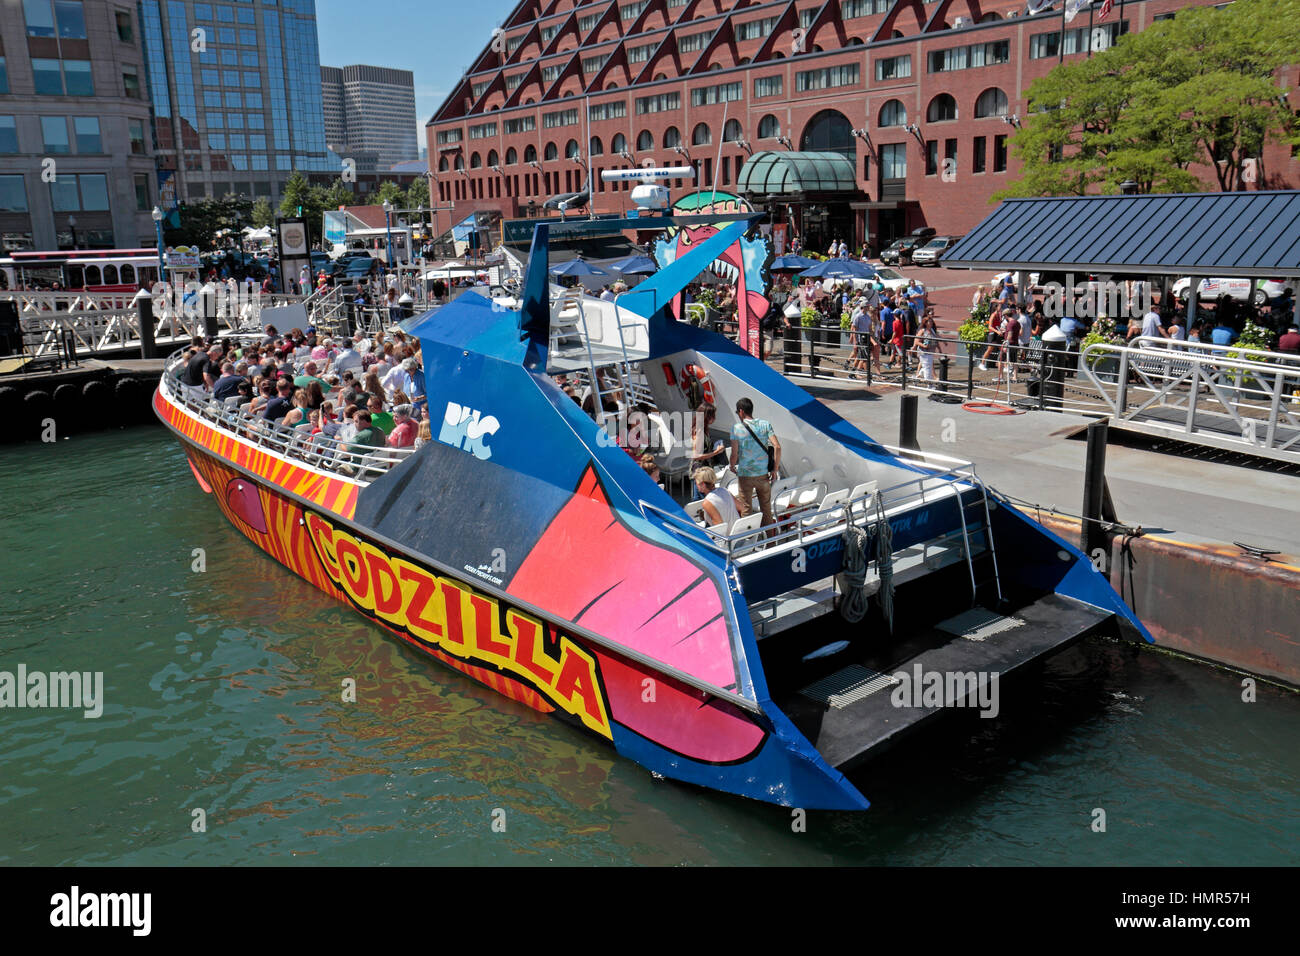 Codzilla, uno stato della tecnica a getto di acqua la barca turistica accanto a Long Wharf, nel porto di Boston, Boston, Massachusetts, Stati Uniti. Foto Stock